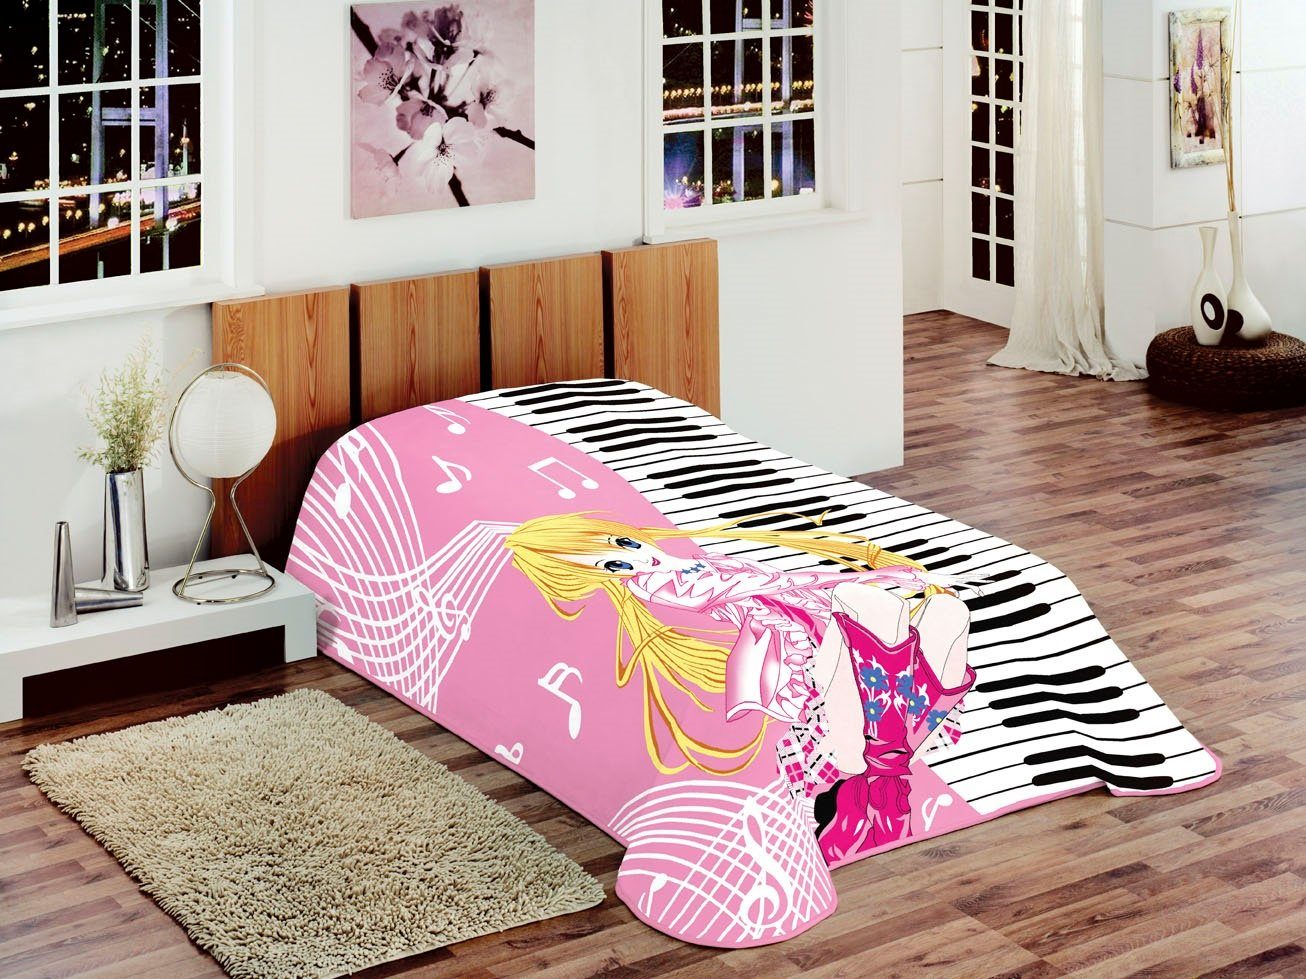 Tagesdecke Decke Kinderdecke Spieldecke Kuscheldecke Wohndecke Prinzessin mit Piano Design Rosa Pink Gelb Weiß Bunt, Teppich-Traum